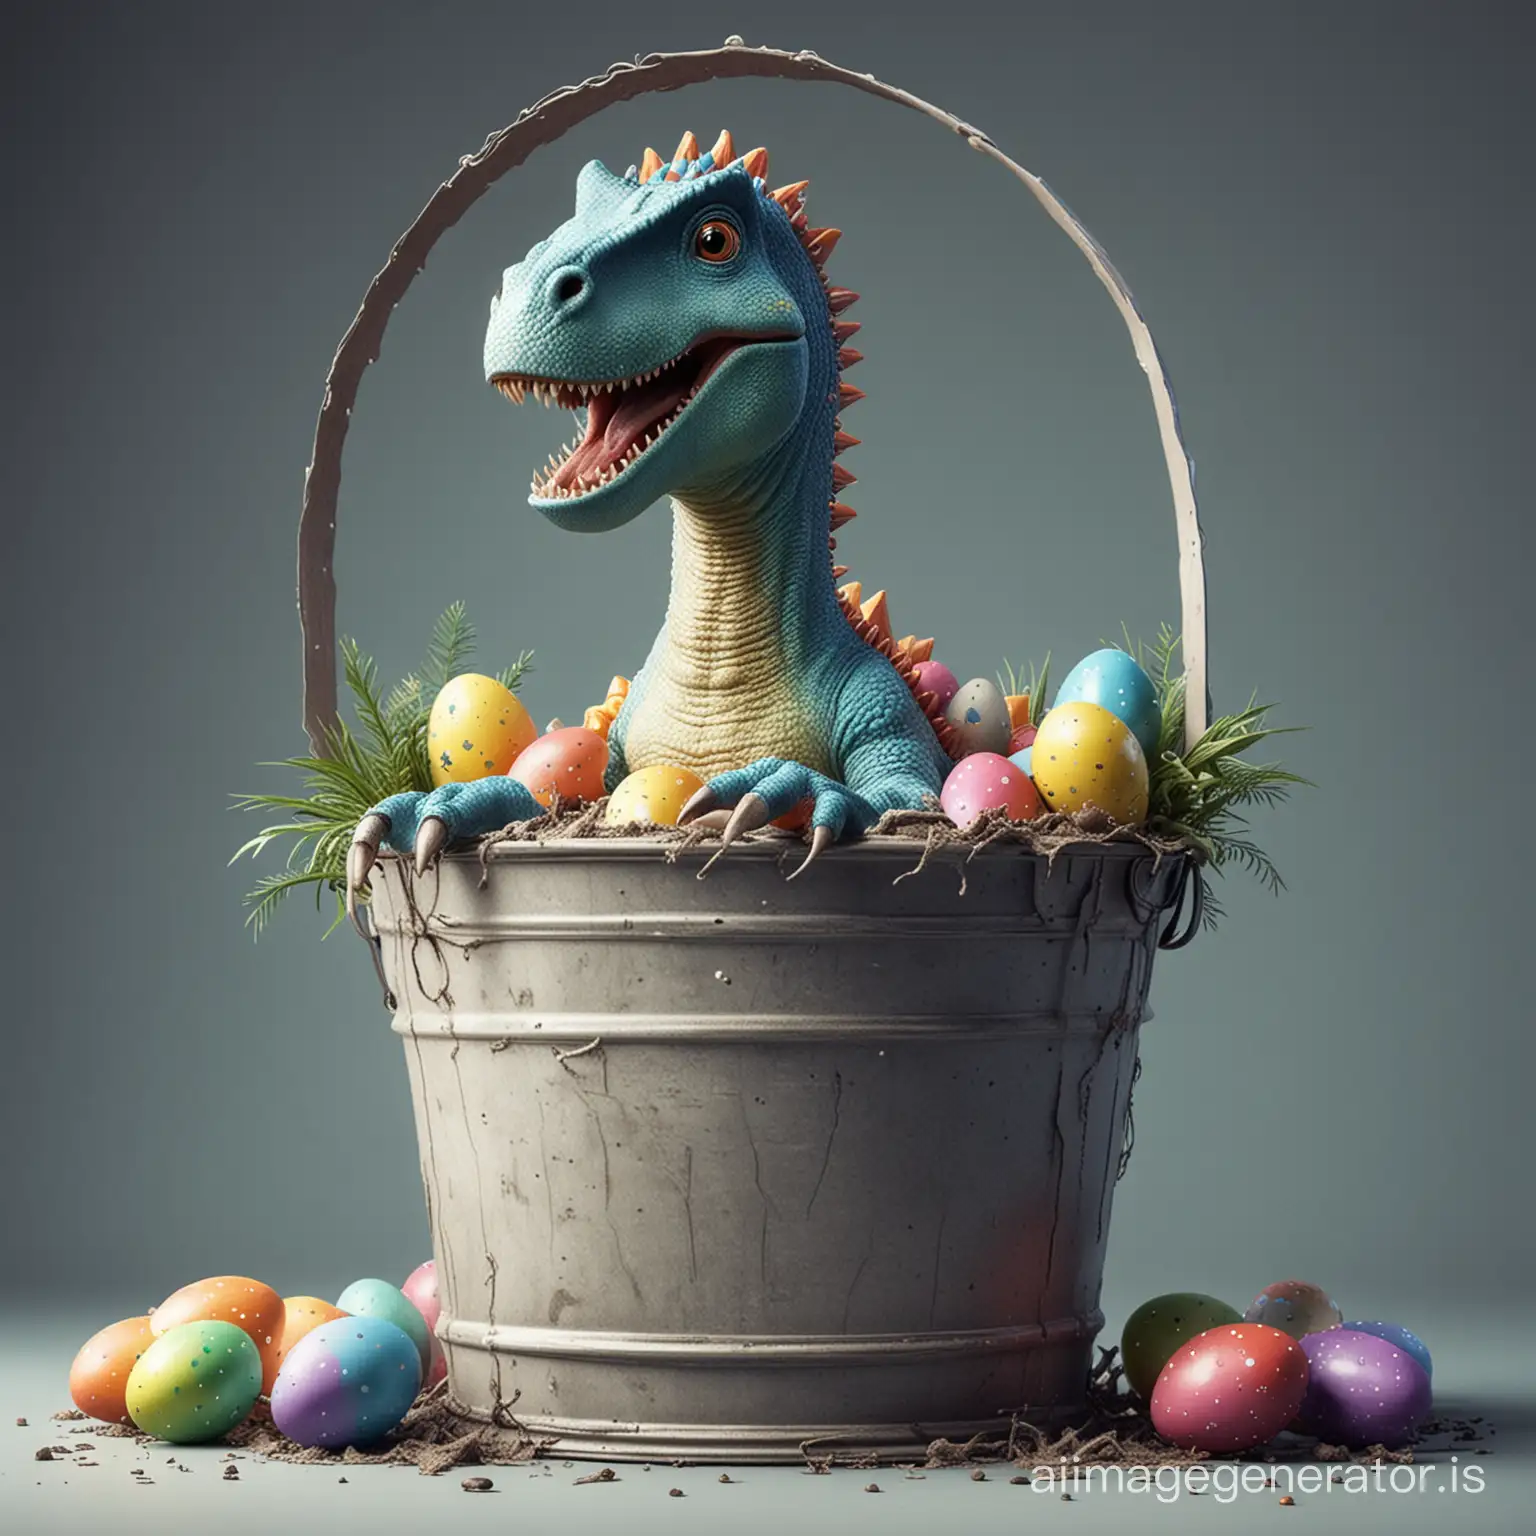 Joyful-Easter-Celebration-Playful-Dinosaur-in-Futuristic-Bucket